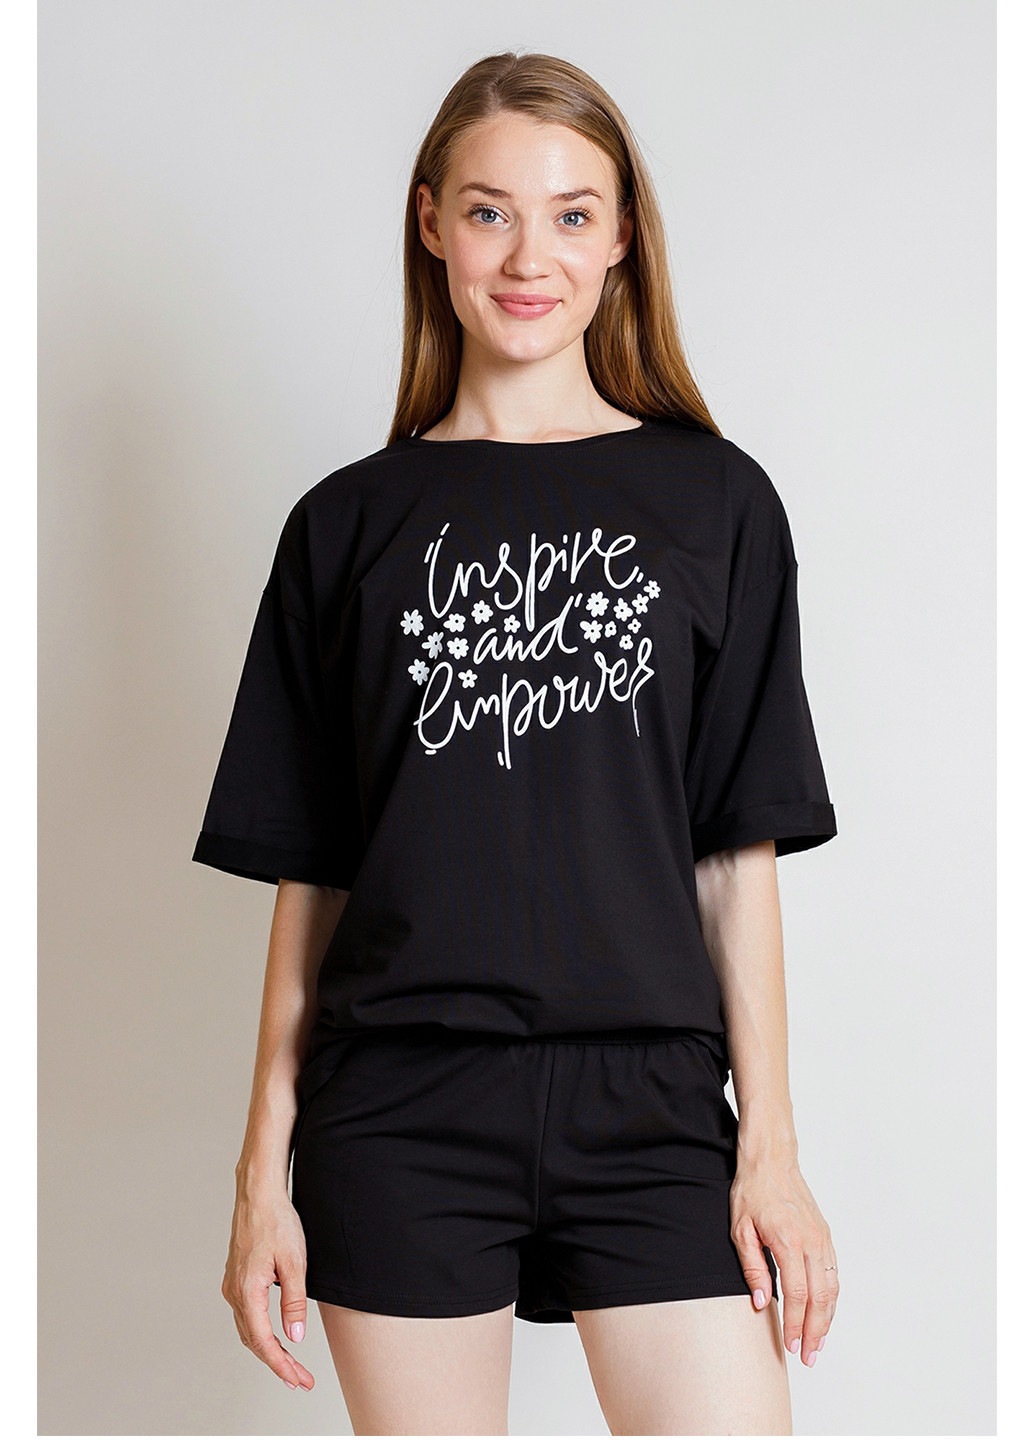 Чорна всесезон комплект жіночий (футболка та шорти) футболка + шорти Kosta 2626-2